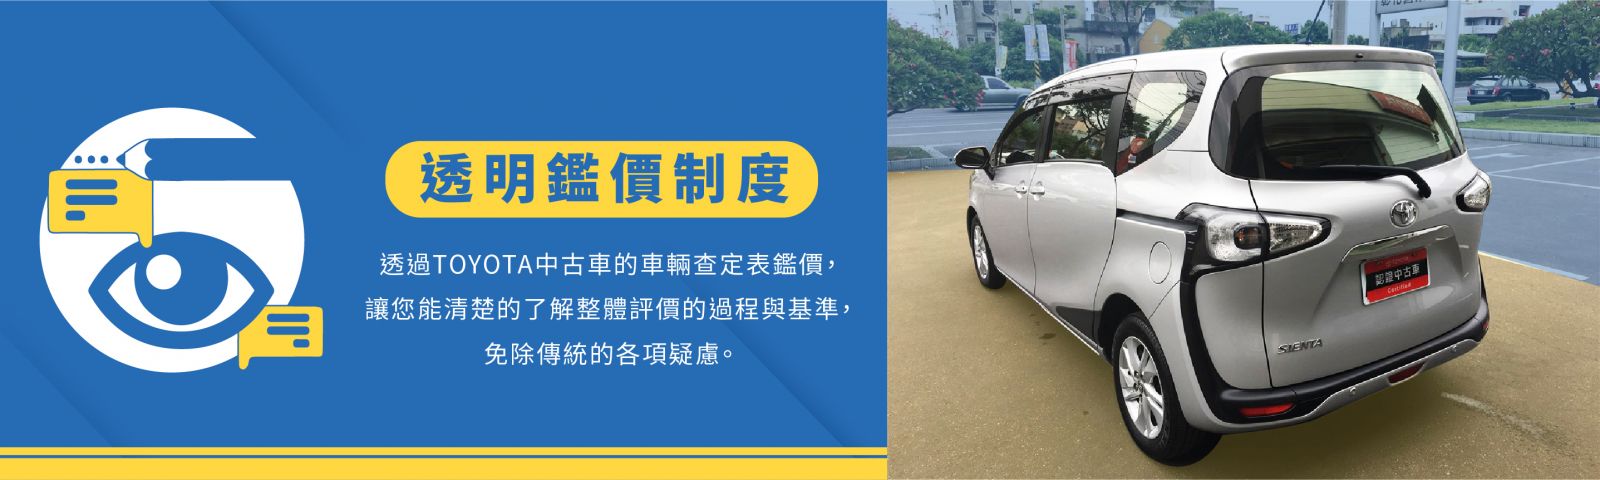 最新消息 Toyota 中部豐田汽車全球資訊網